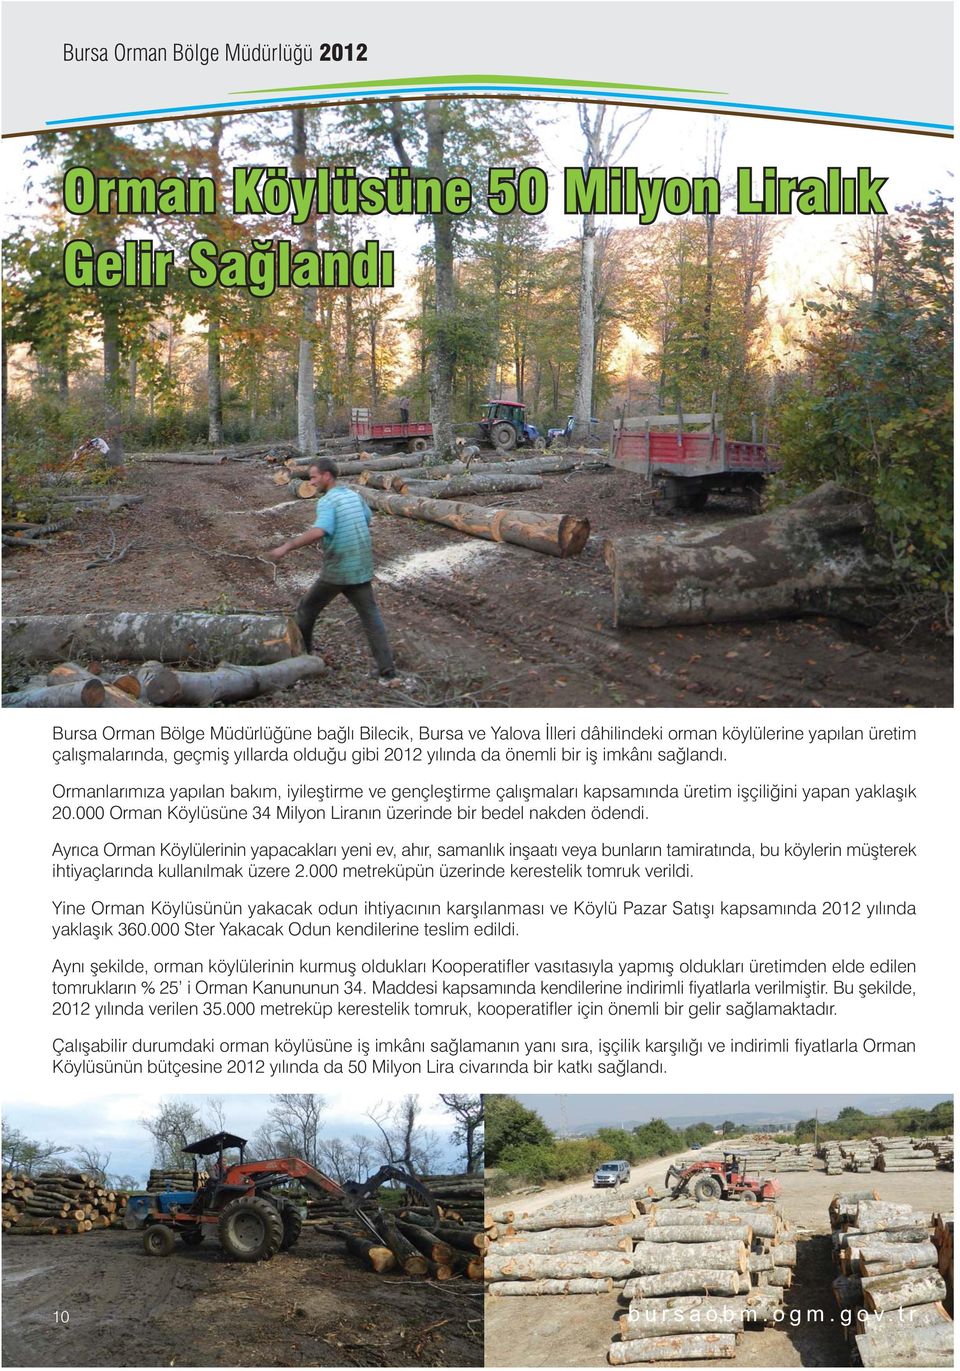 000 Orman Köylüsüne 34 Milyon Liranýn üzerinde bir bedel nakden ödendi.